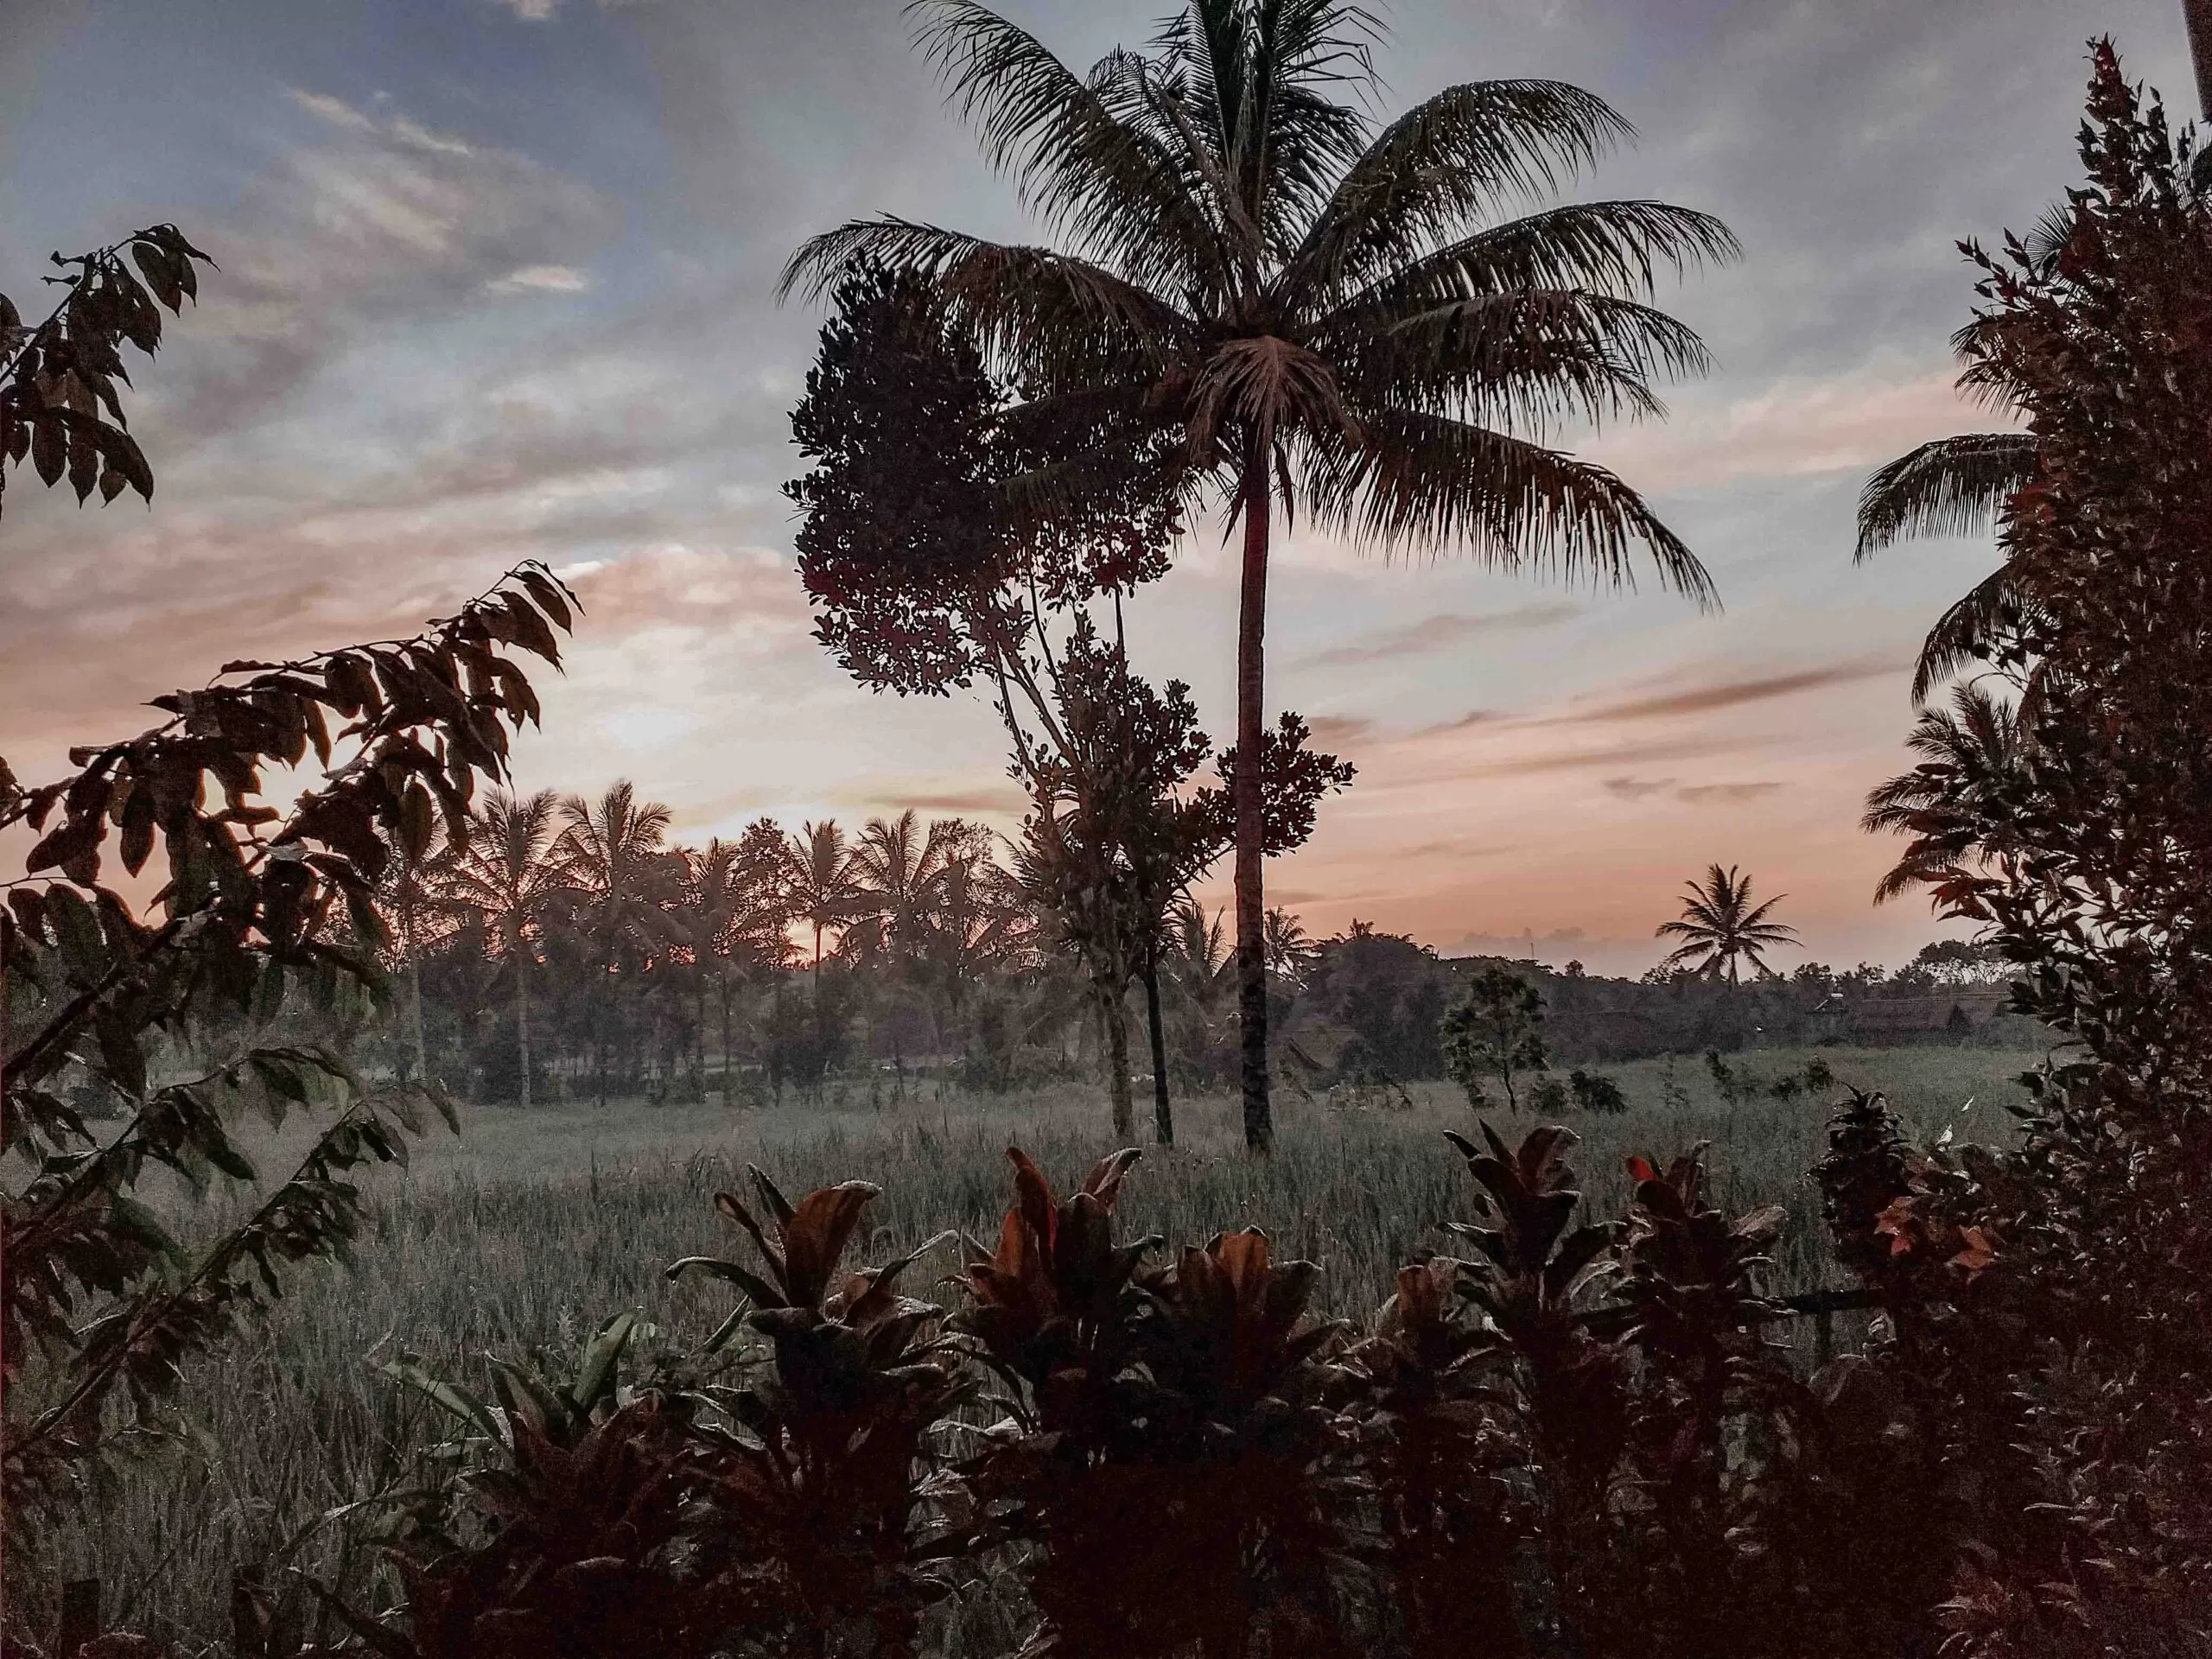 Sunrise Tetebatu, Lombok, Indonesia